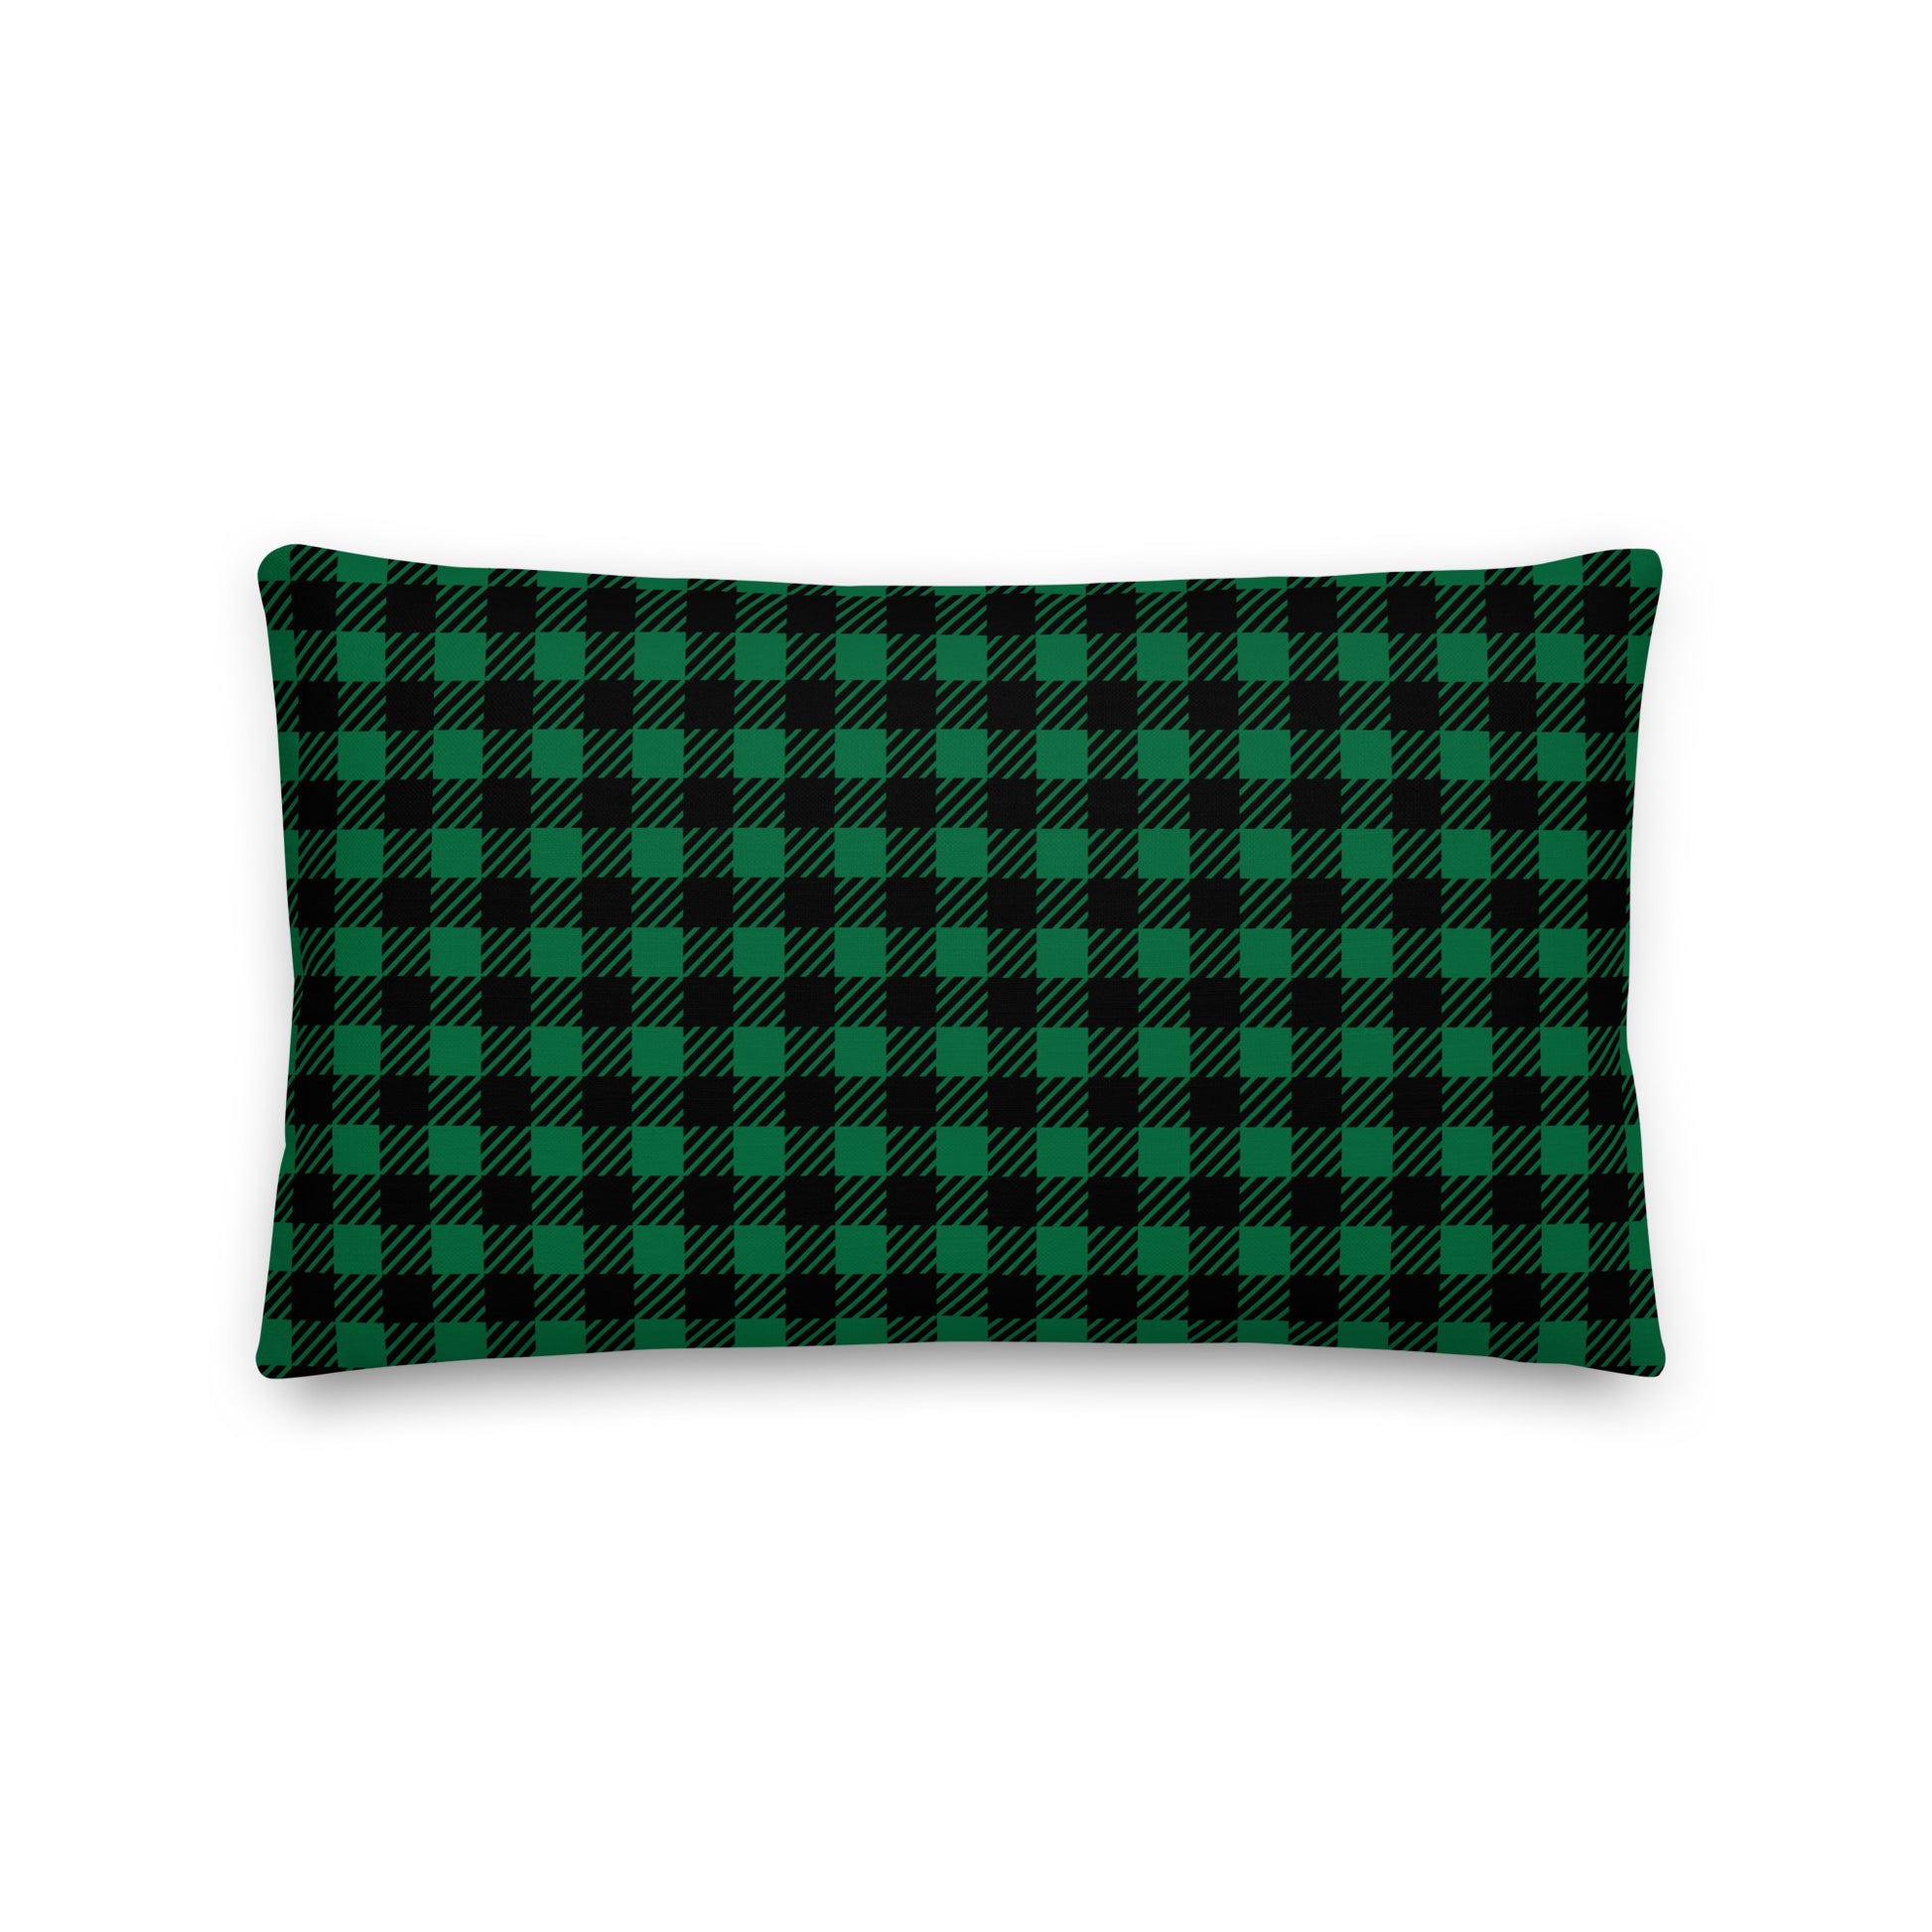 Farmhouse Throw Pillow - Buffalo Plaid • ARN Stockholm • YHM Designs - Image 02